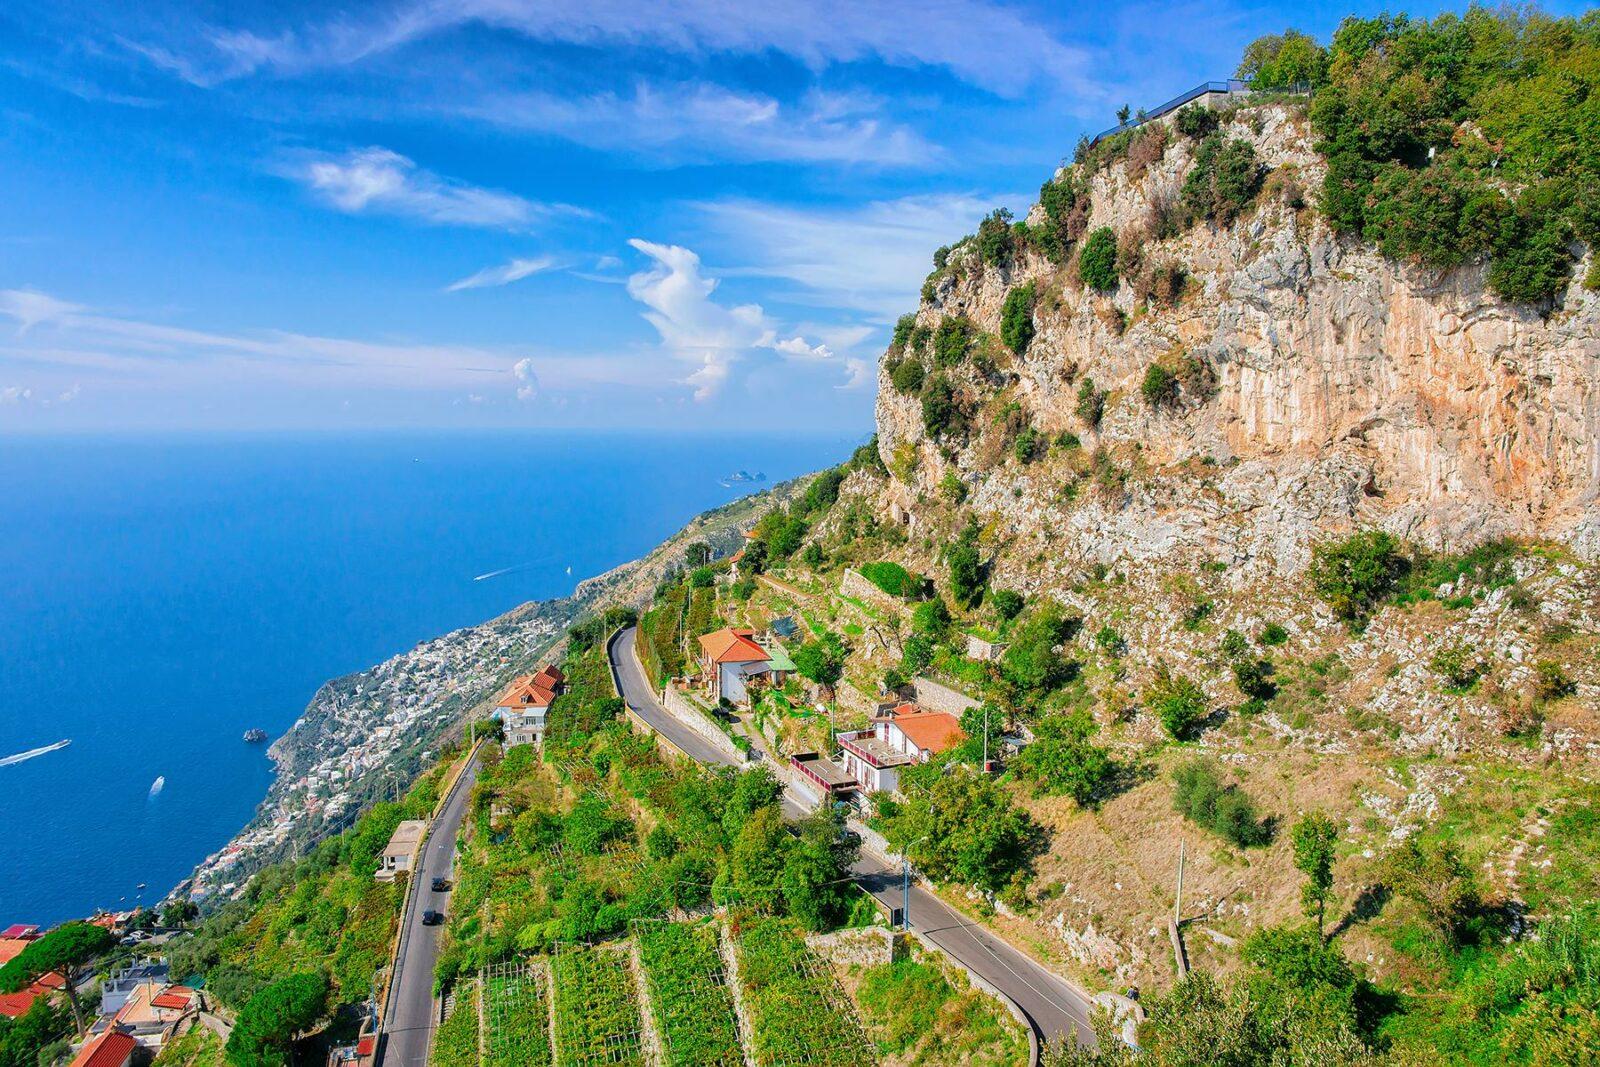 hiking tours amalfi coast italy